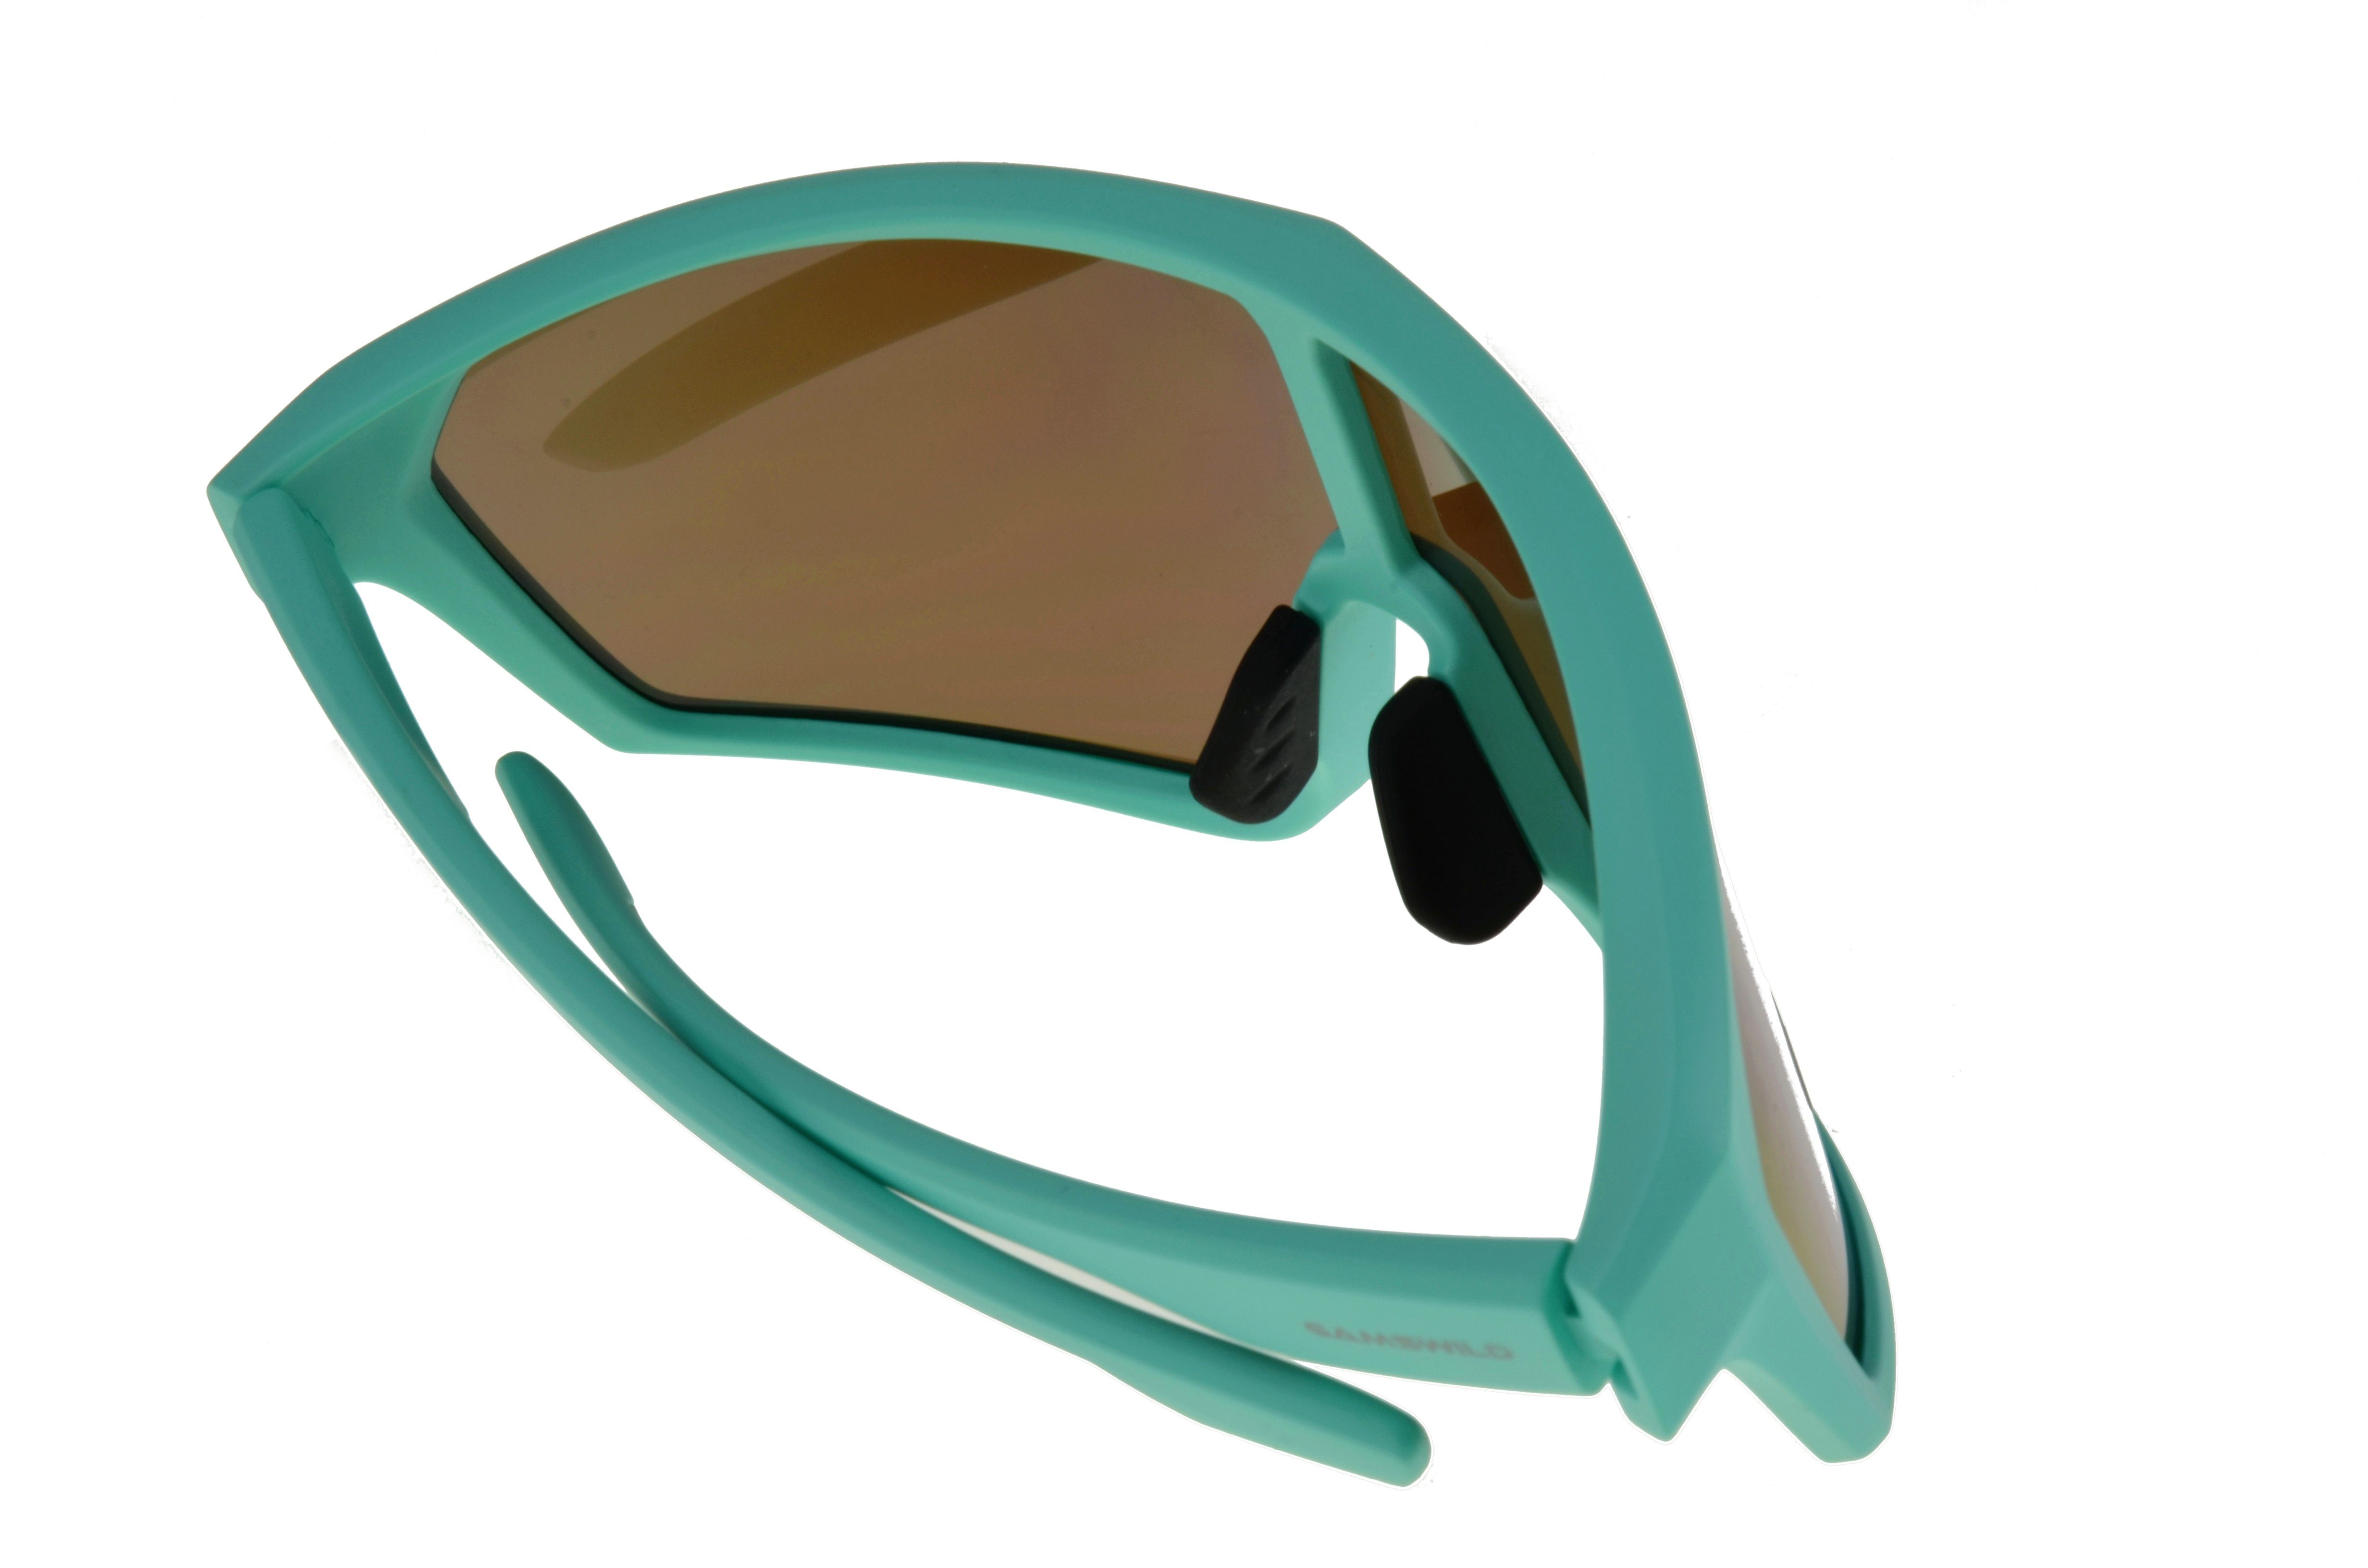 Gamswild Monoscheibensonnenbrille WS5838 Skibrille Damen Unisex Design, TR90 Sonnenbrille tolles mintgrün grün, Fahrradbrille weiß Herren blau